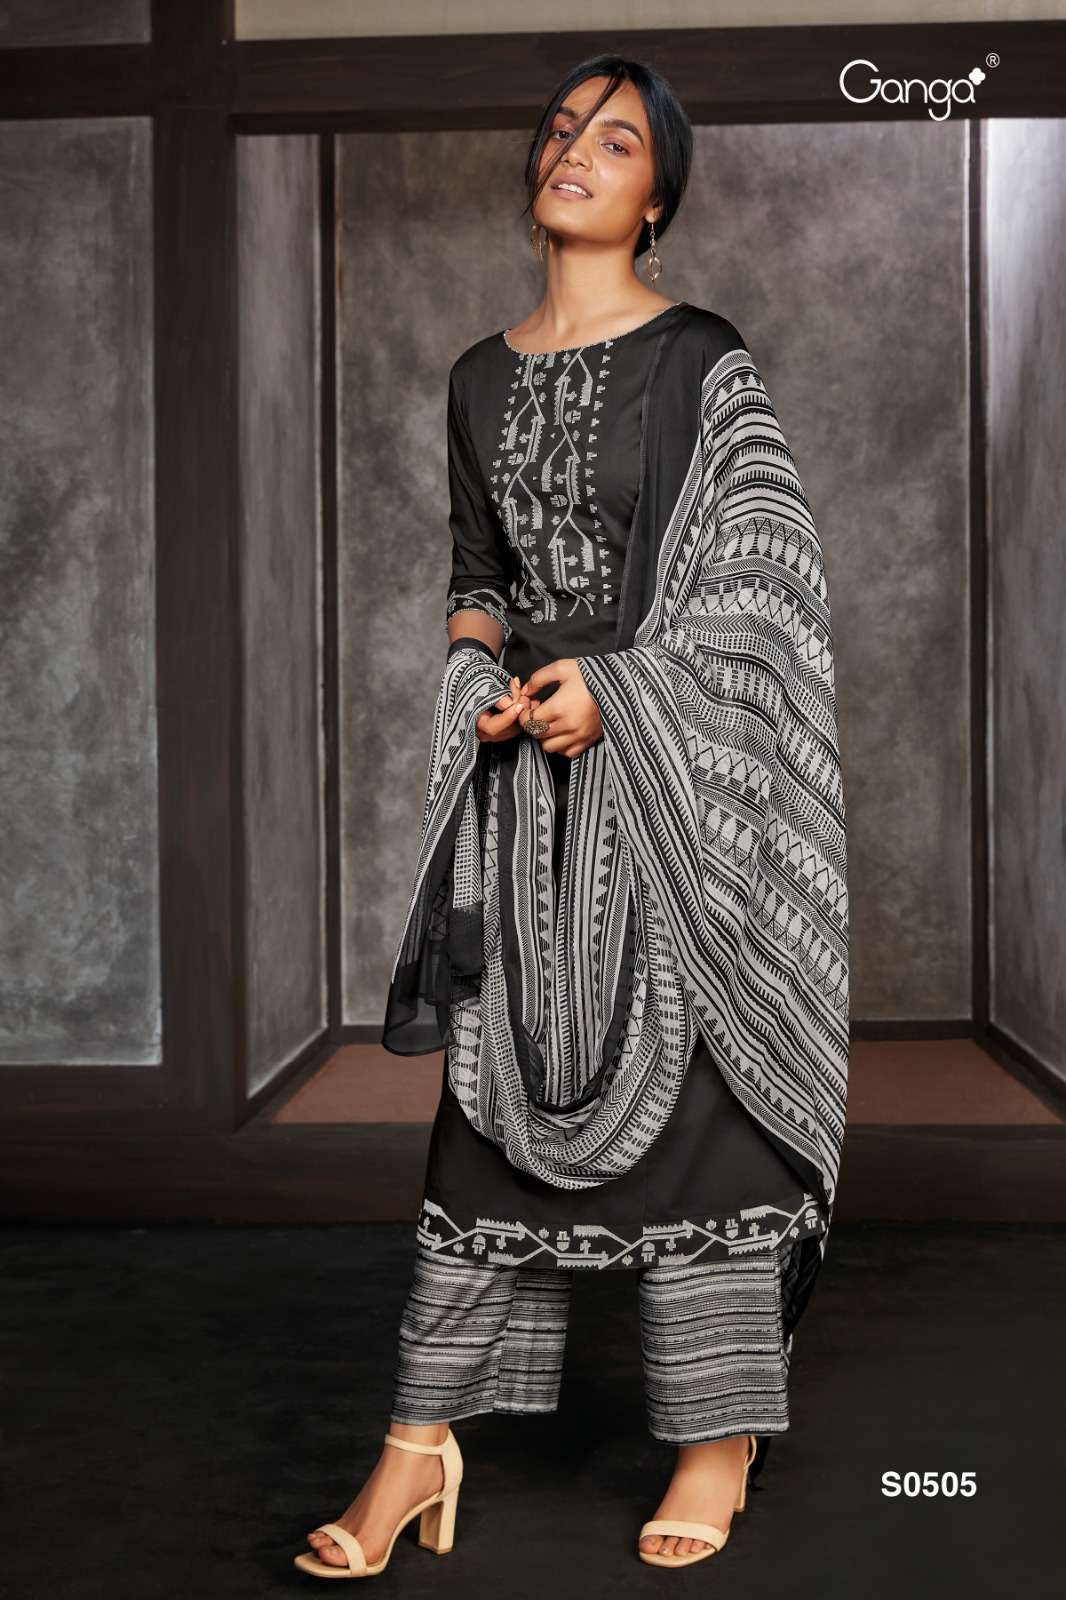 Ganga Inna 1241 Premium Cotton Wholesale Designer Salwar Suit Catalog